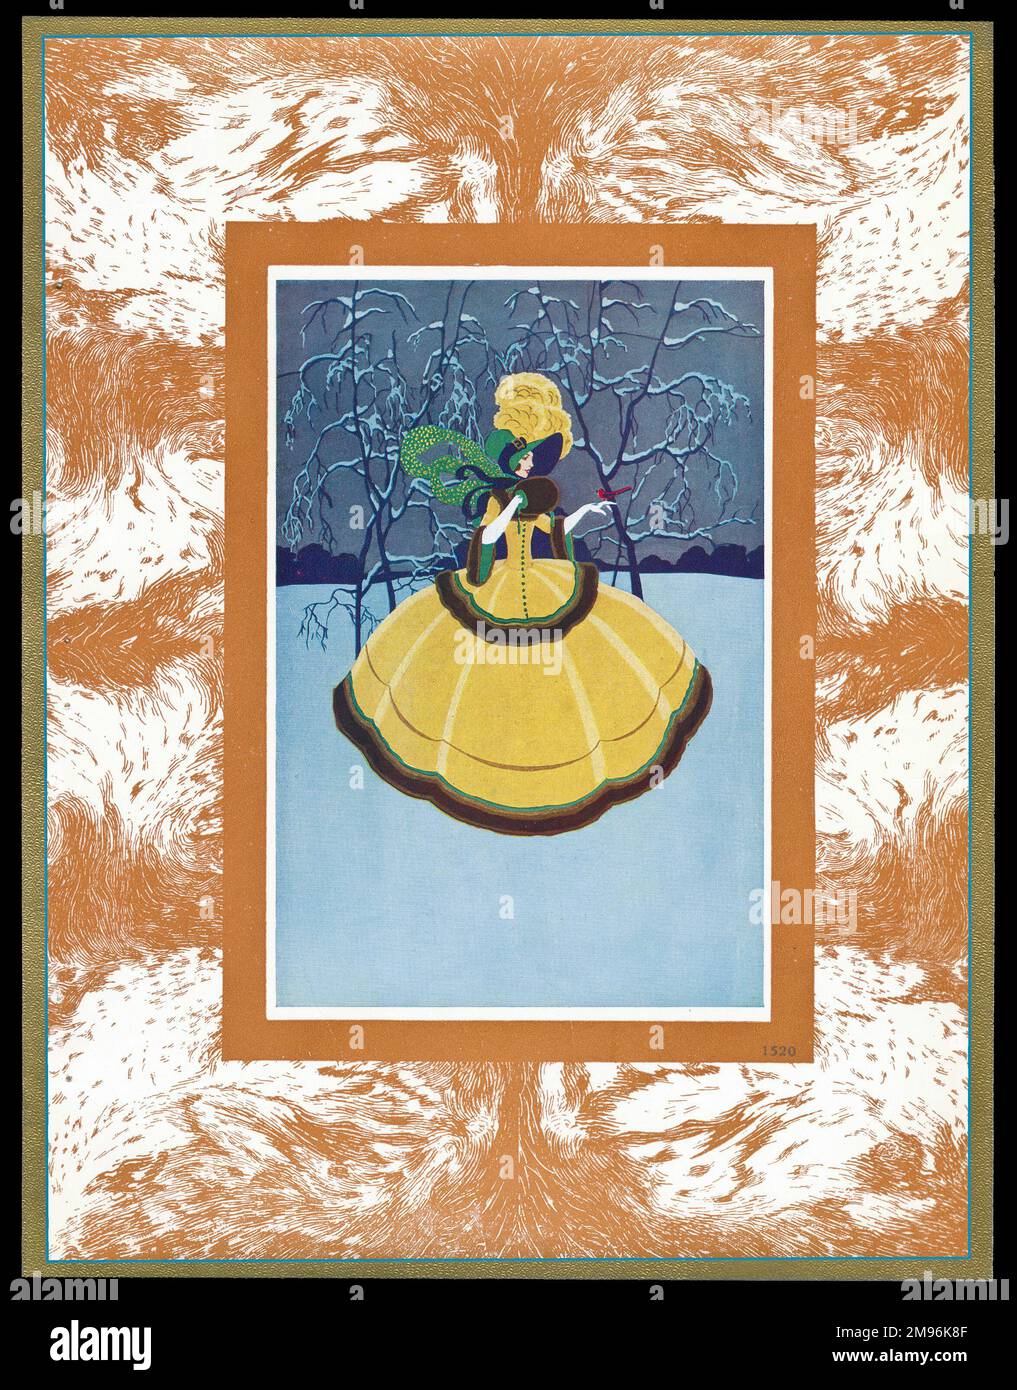 Schokoladenschachtel mit einer Dame in einem gelben Kleid mit breitem Rand, die in einer Winterlandschaft mit einem Vogel auf der Hand steht. Stockfoto